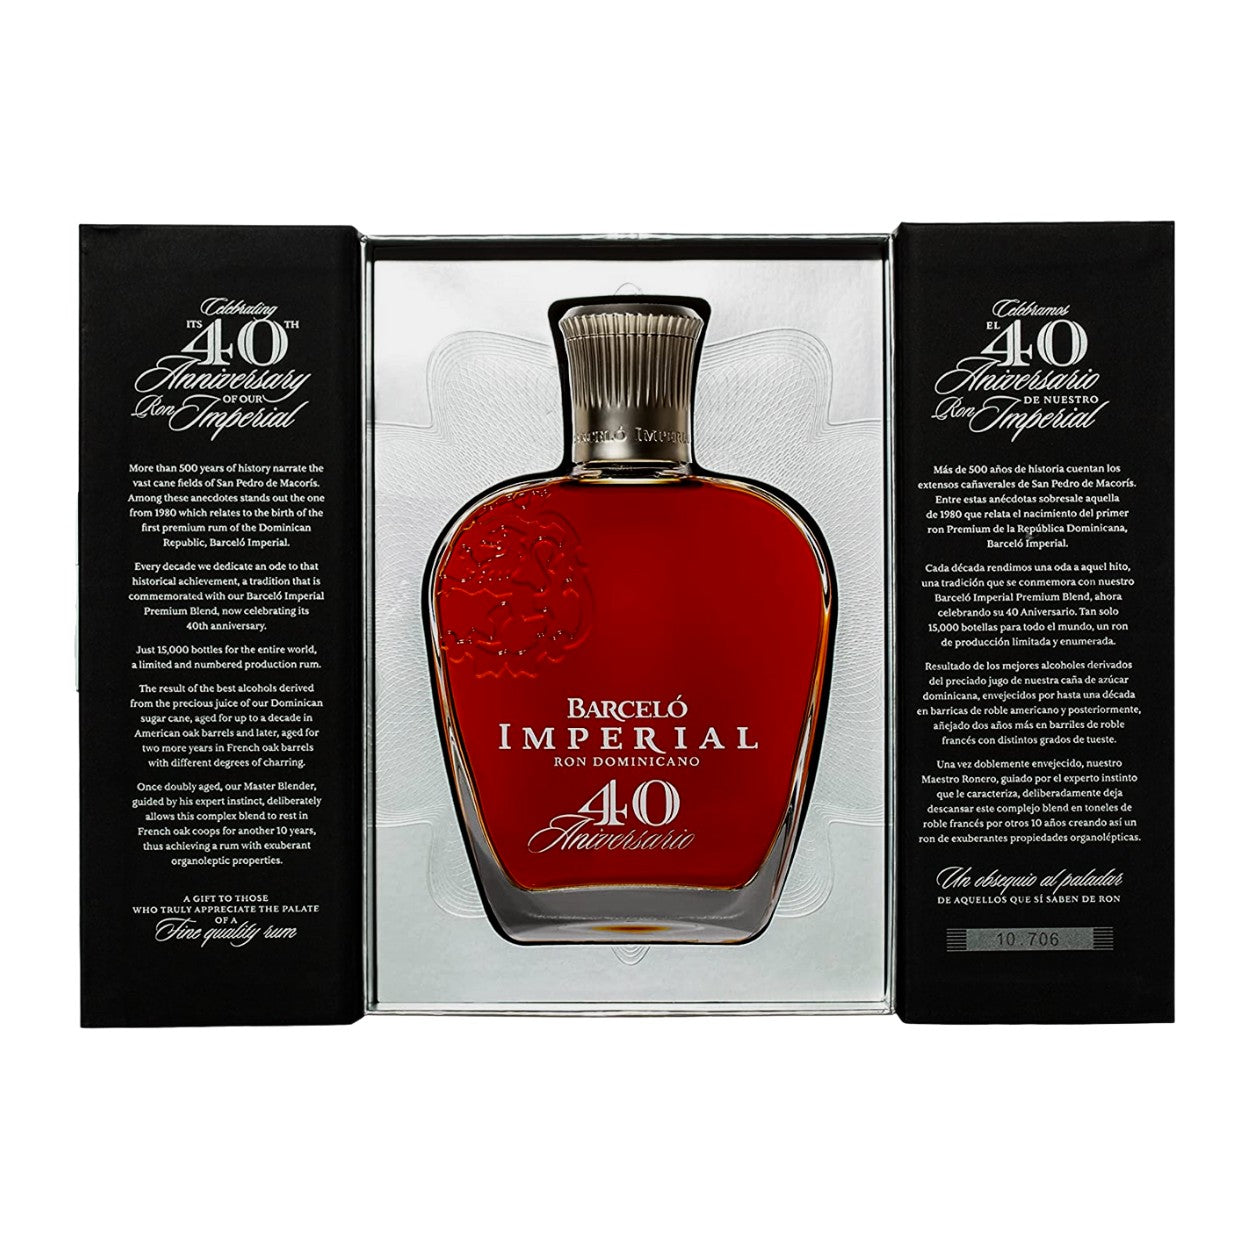 Barceló Imperial Premium Blend 40 Aniversario. Ron Barceló